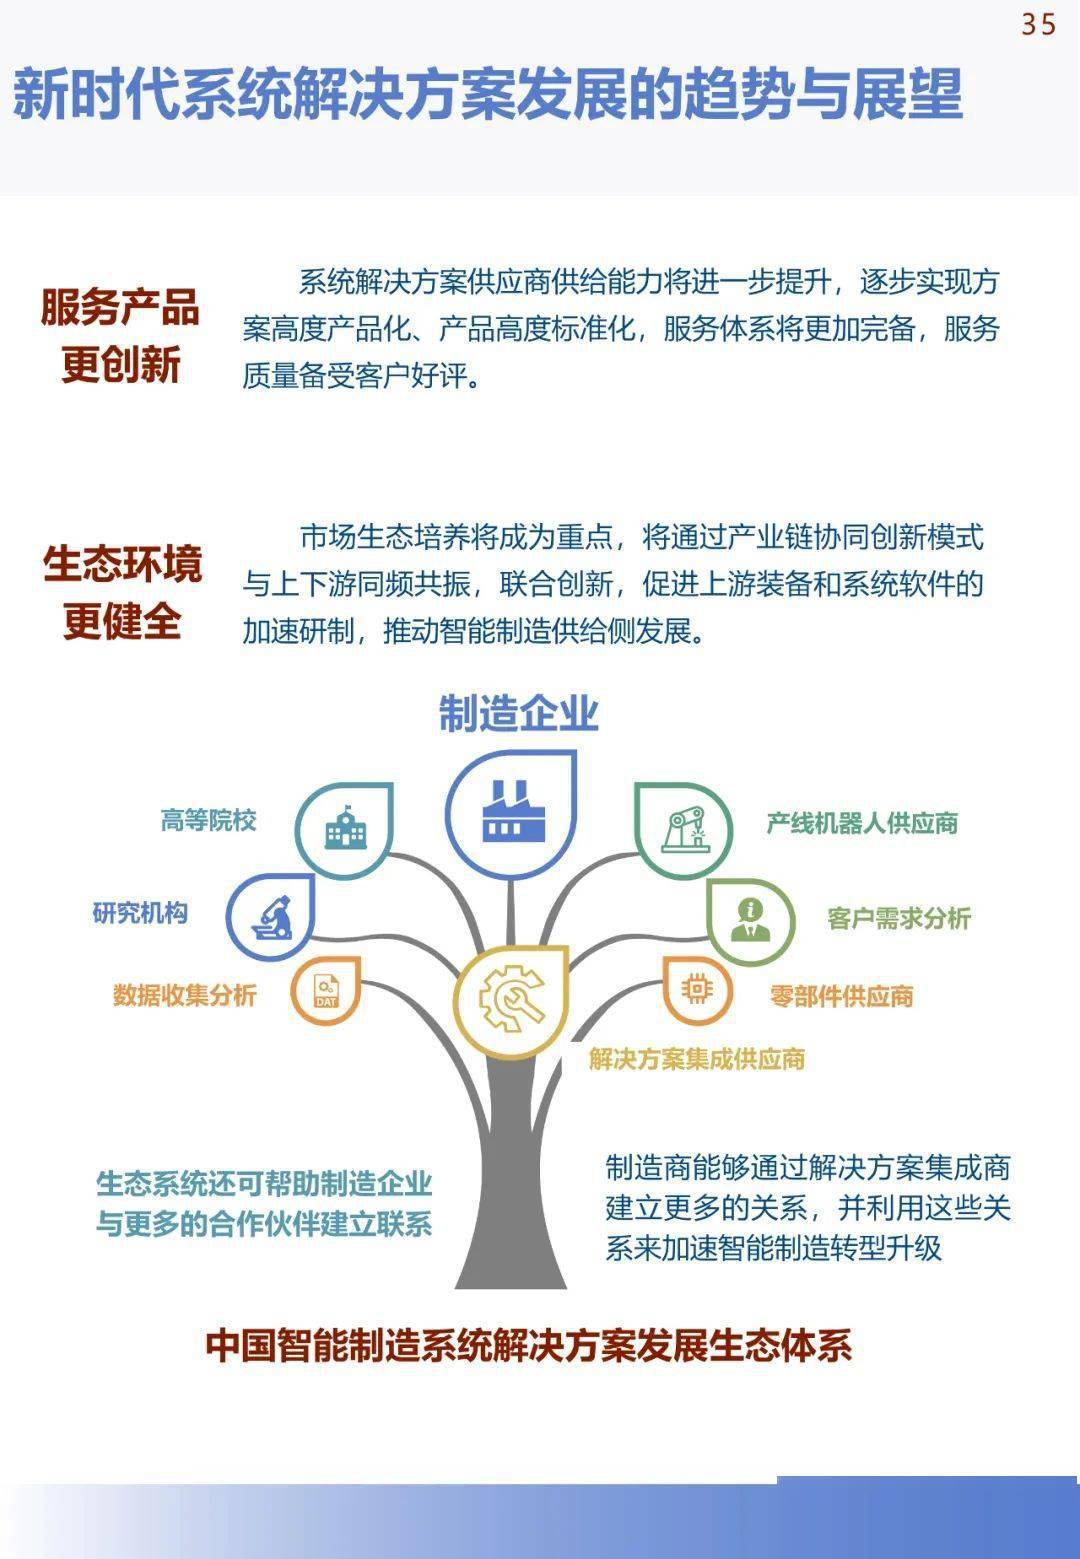 中国手机华为系统下载
:《中国智能制造发展研究报告：系统解决方案》发布(可下载)-第39张图片-太平洋在线下载